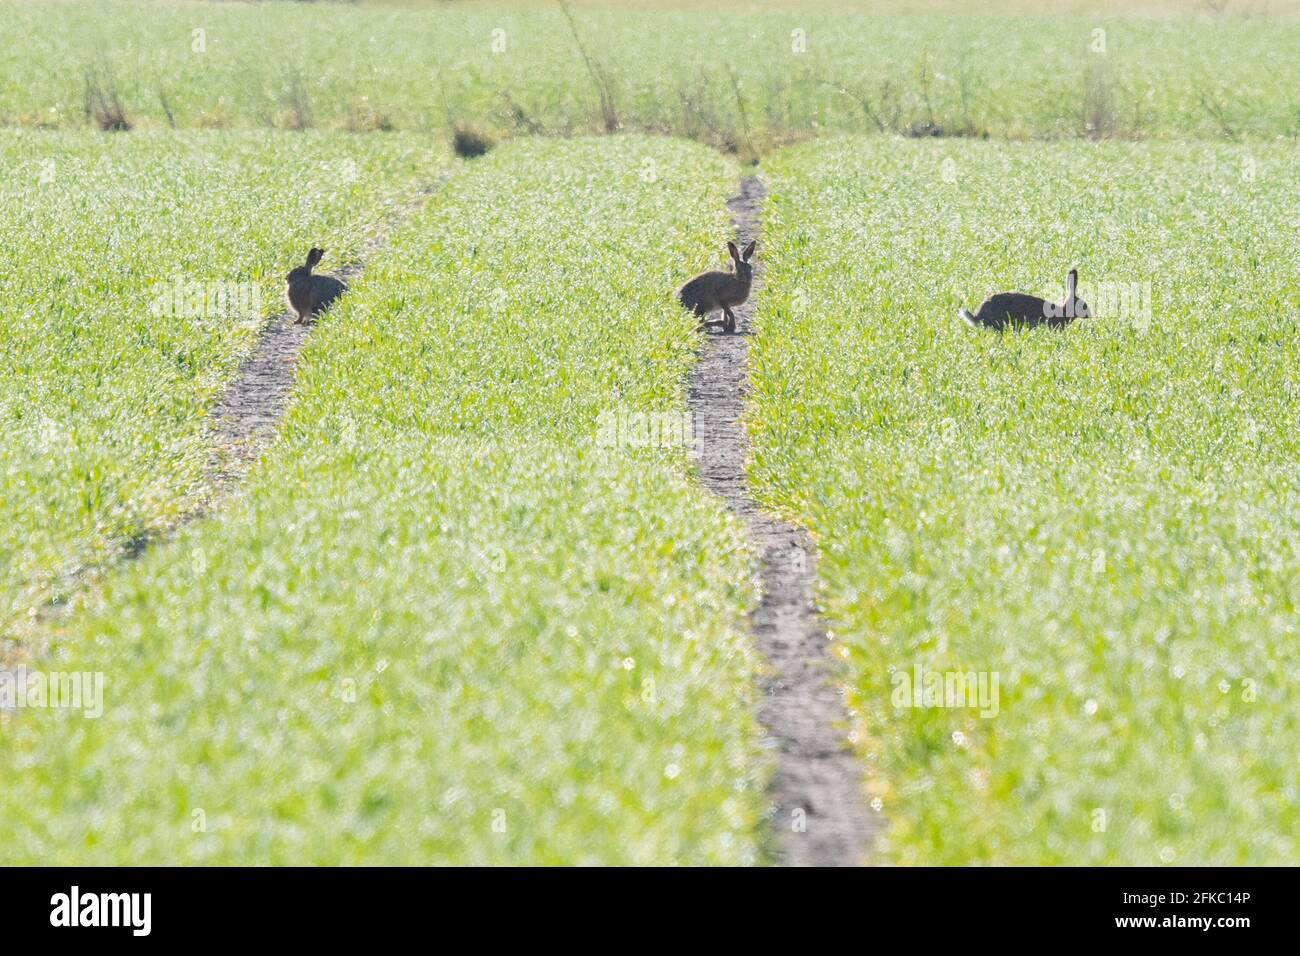 Braune Hasen in jungen Ackerpflanzen - Schottland, Großbritannien Stockfoto